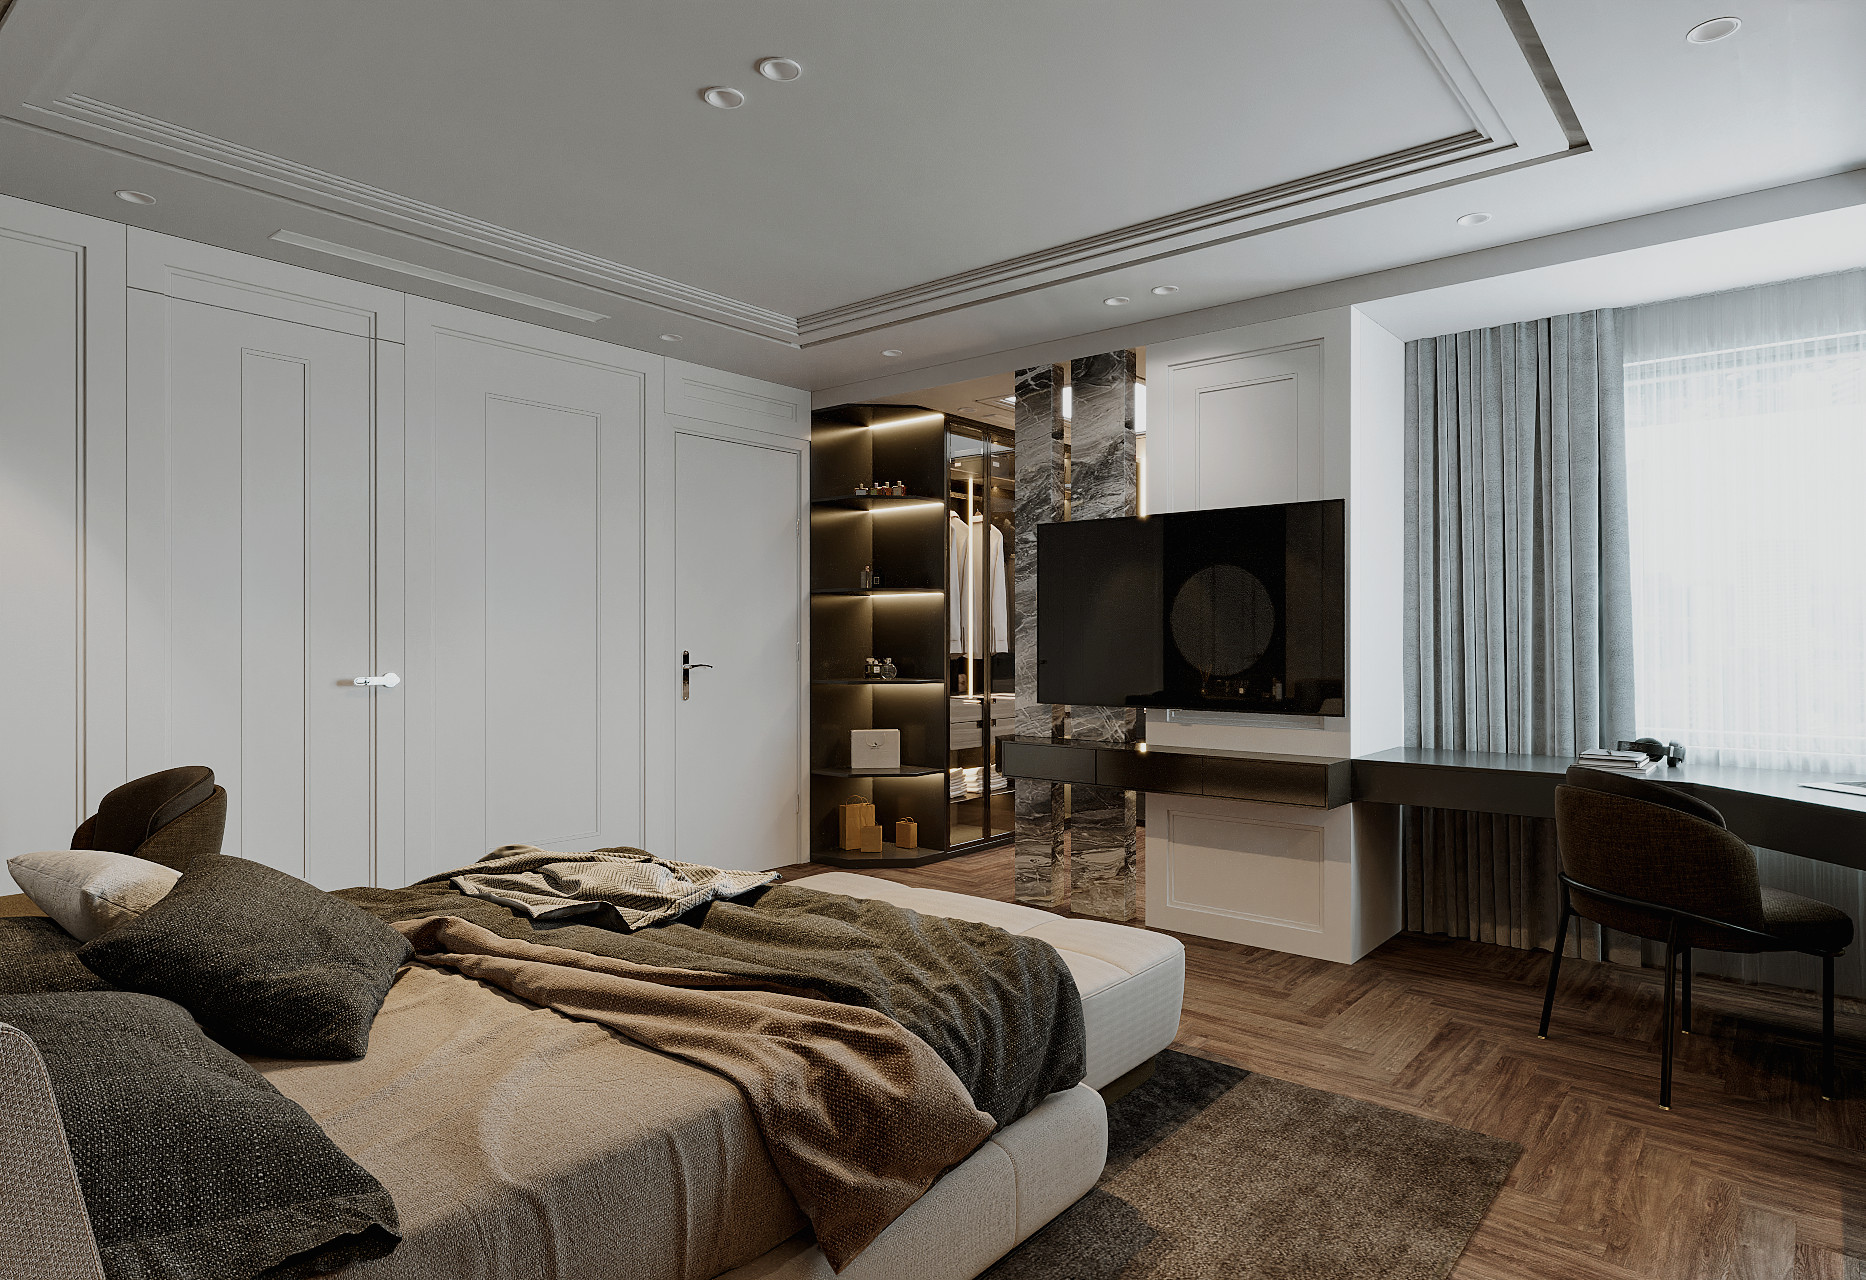 Phòng ngủ Master, phong cách Hiện đại Modern, thiết kế concept nội thất, căn hộ Saigon Pearl Topaz 2